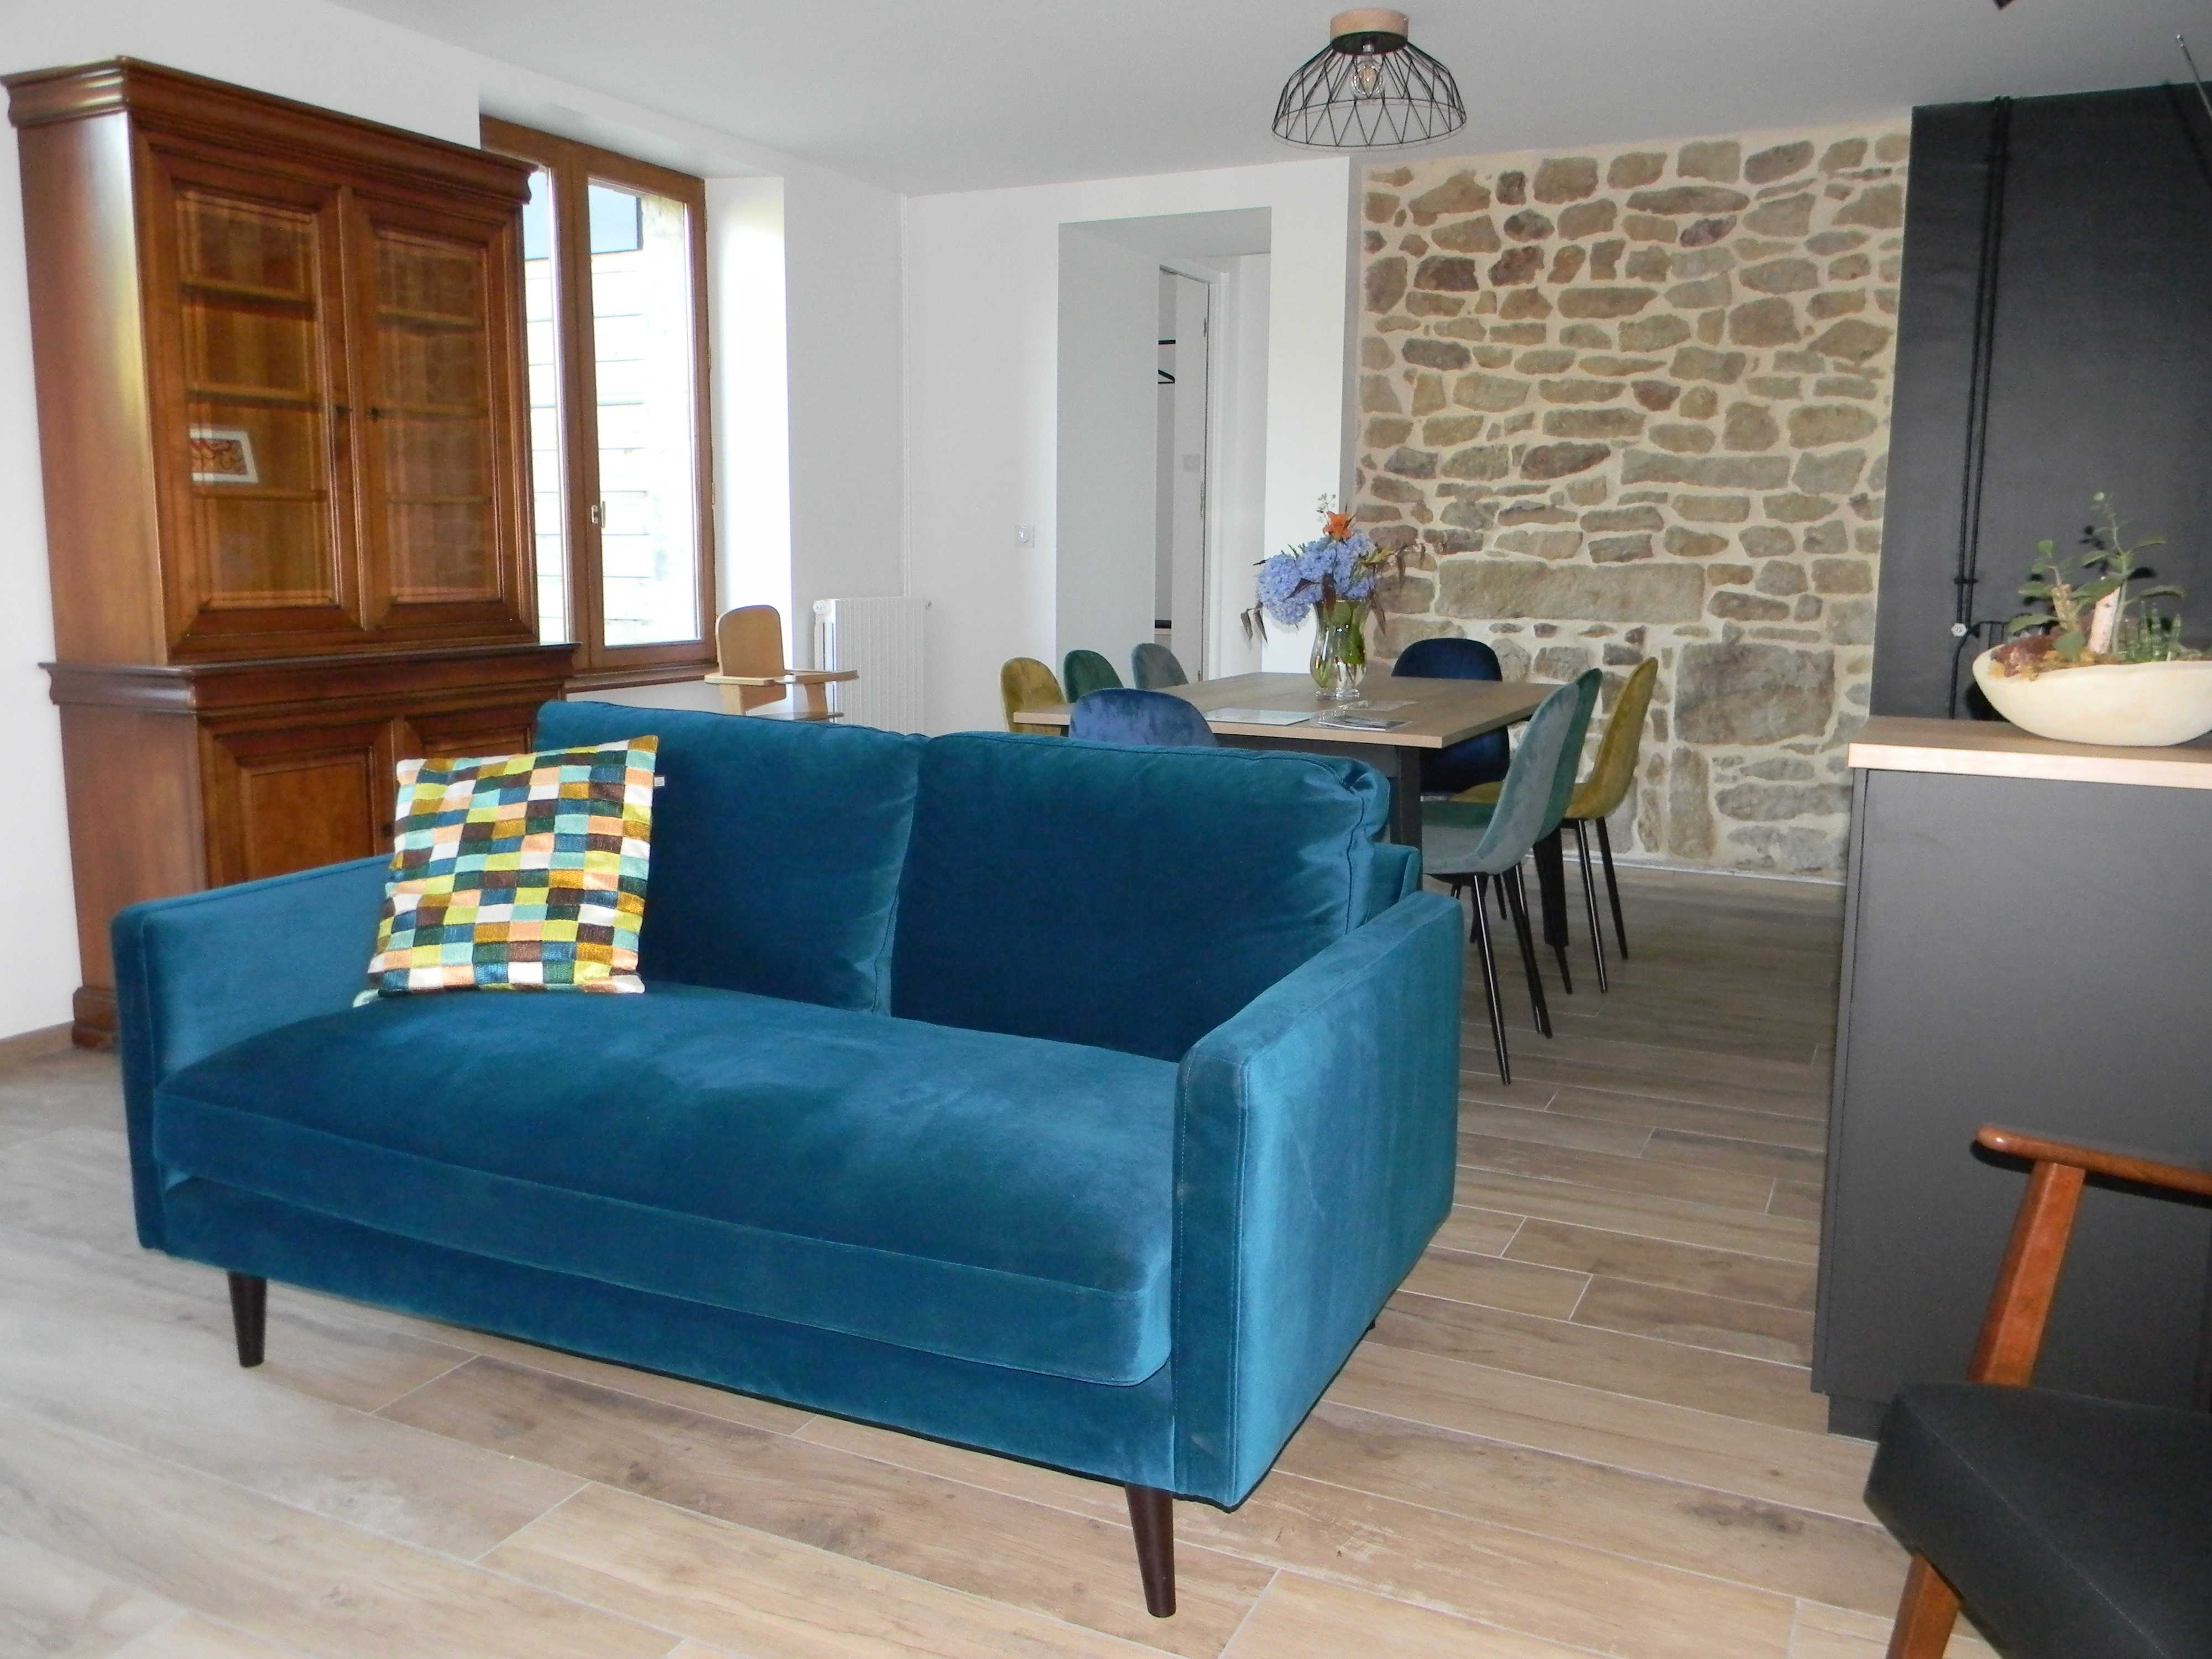 Séjour chambres d'hôtes Lorient Hennebont Auray Kervignac - Les Jardins du Cloestro - Espace commun avec cuisine salon